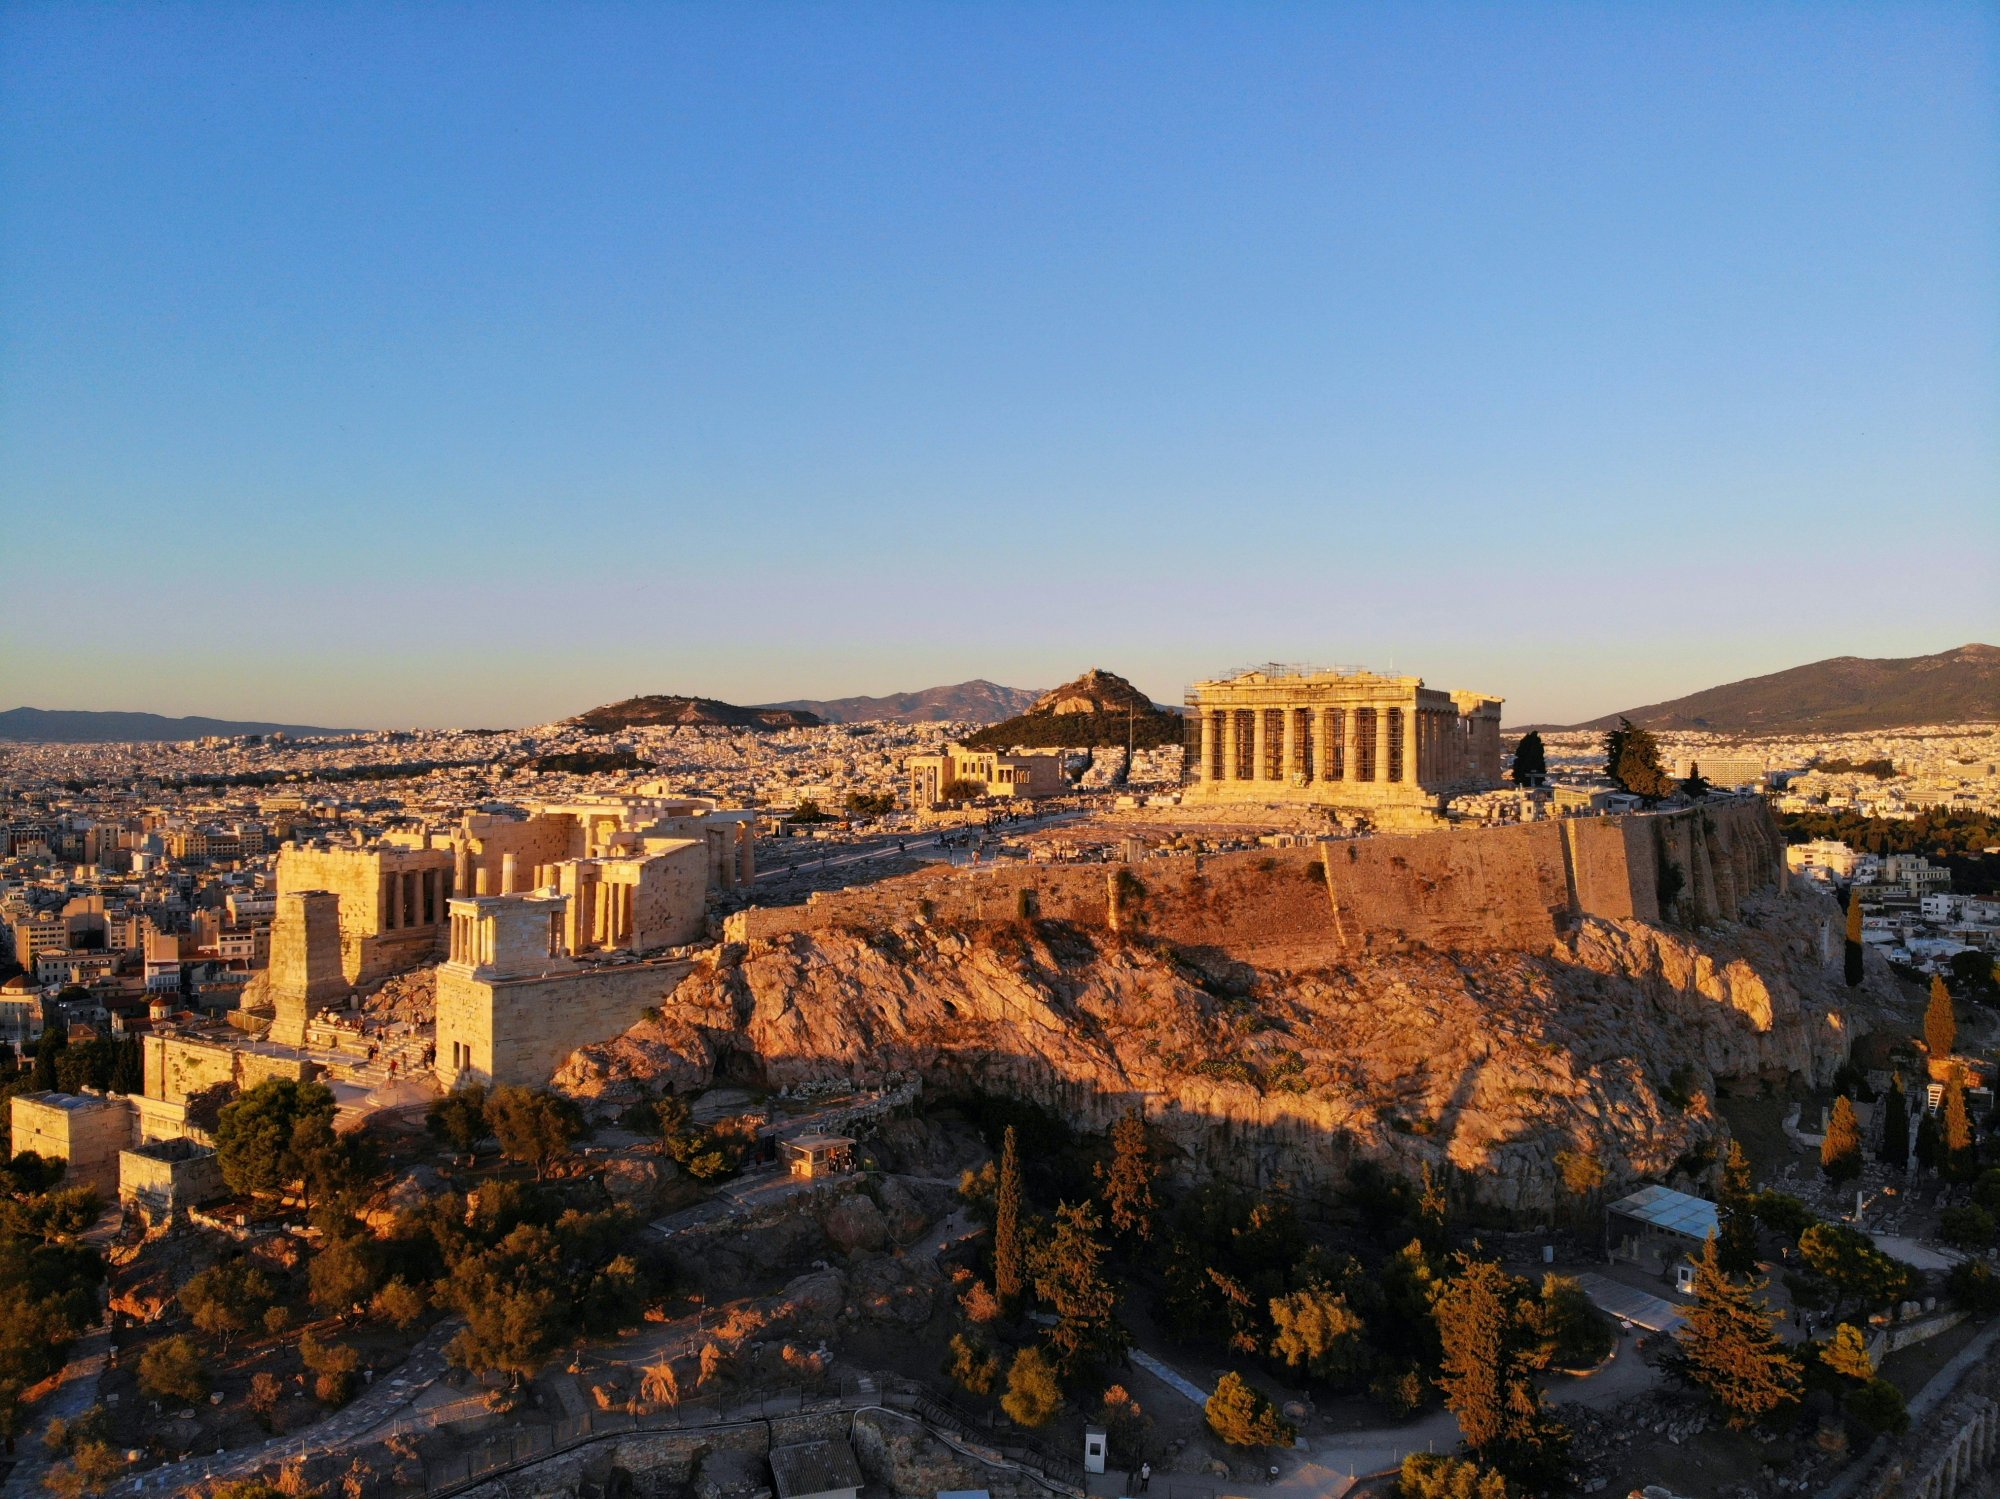 Κορυφαίος city-break προορισμός στην Ευρώπη αναδείχθηκε η Αθήνα  